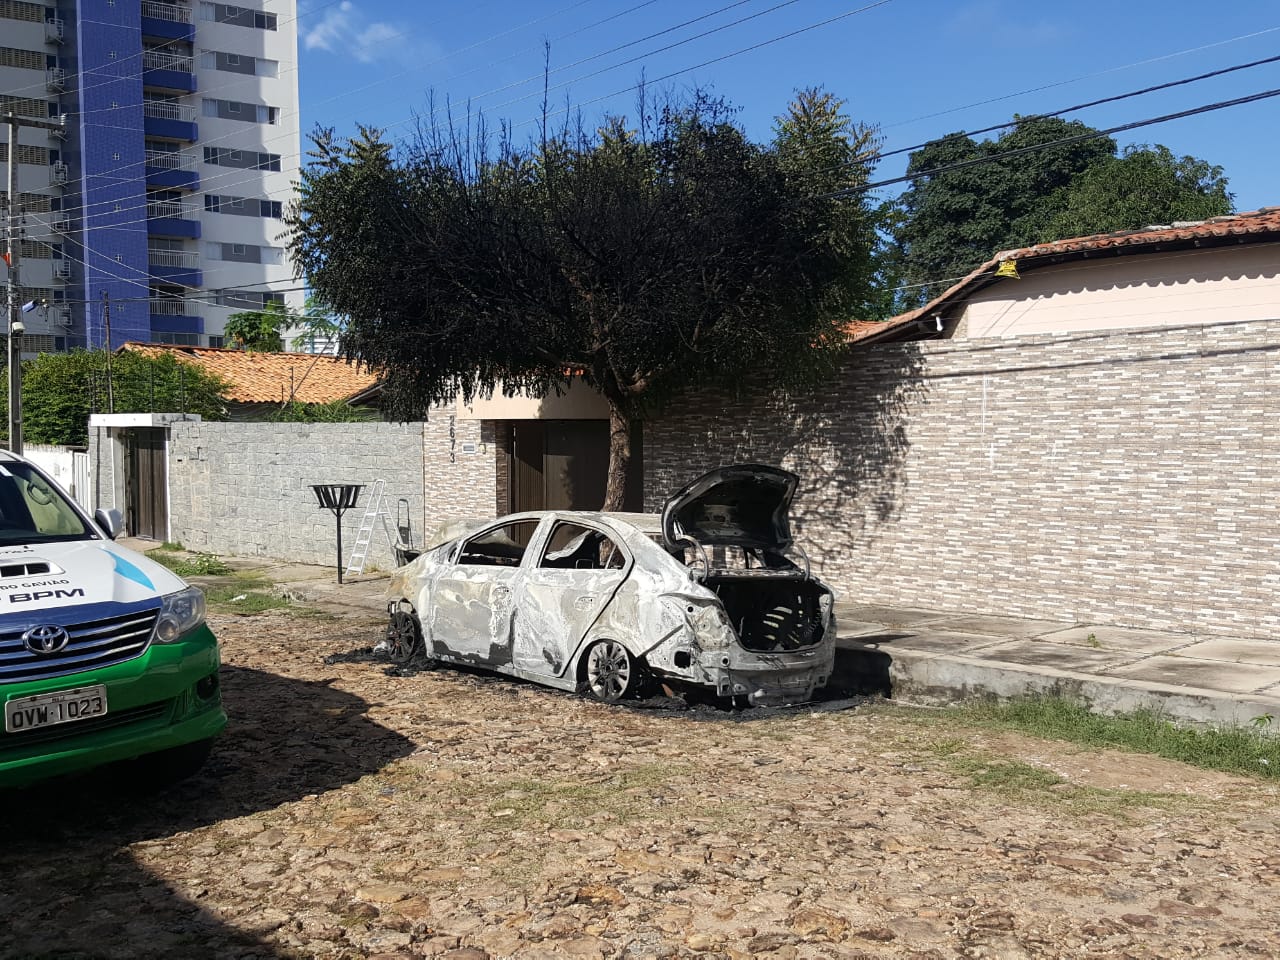 Dois indivíduos atearam fogo em um veículo na zona leste de Teresina